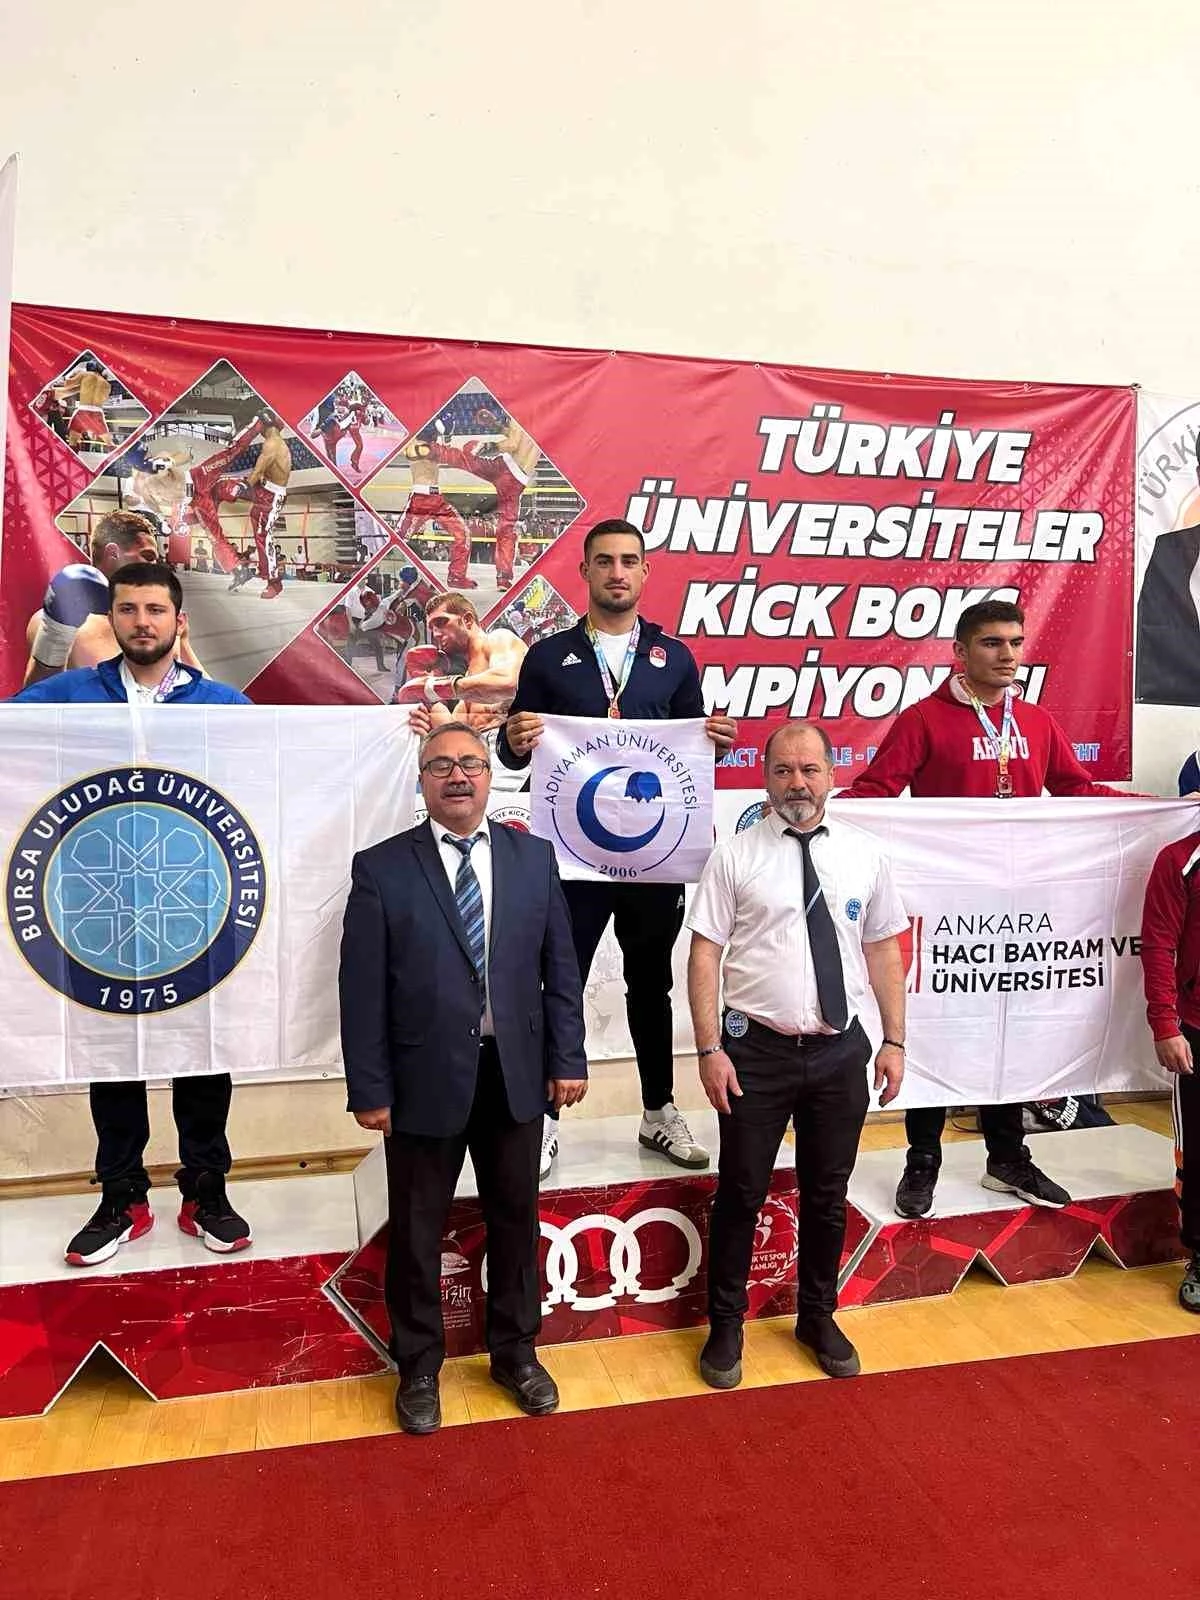 Adıyaman Üniversitesi Öğrencisi Emrah Yaşar Üniversitelerarası Türkiye Kick Boks Şampiyonasında Altın Madalya Kazandı